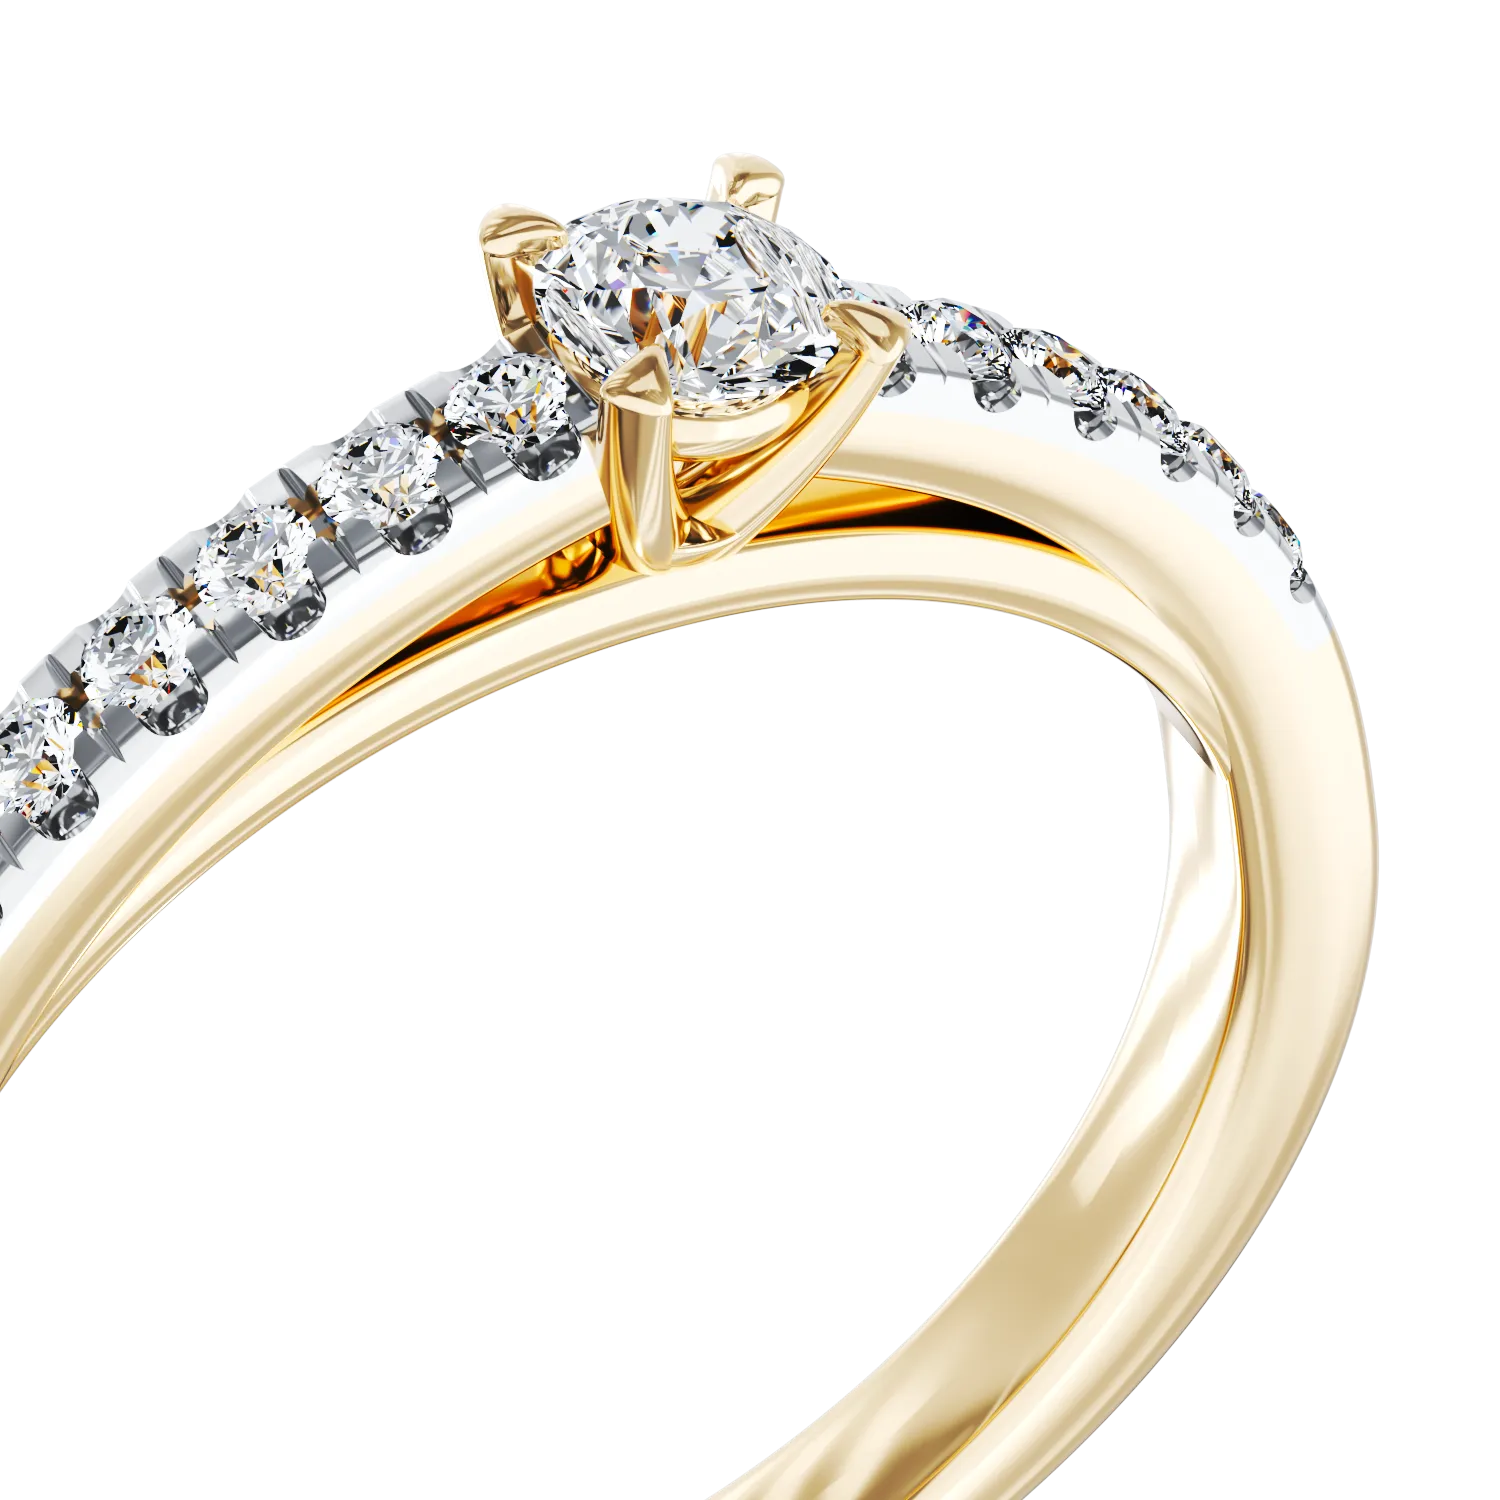 Eljegyzési gyűrű 18K-os sárga aranyból 0,33ct gyémánttal és 0,13ct gyémánttal